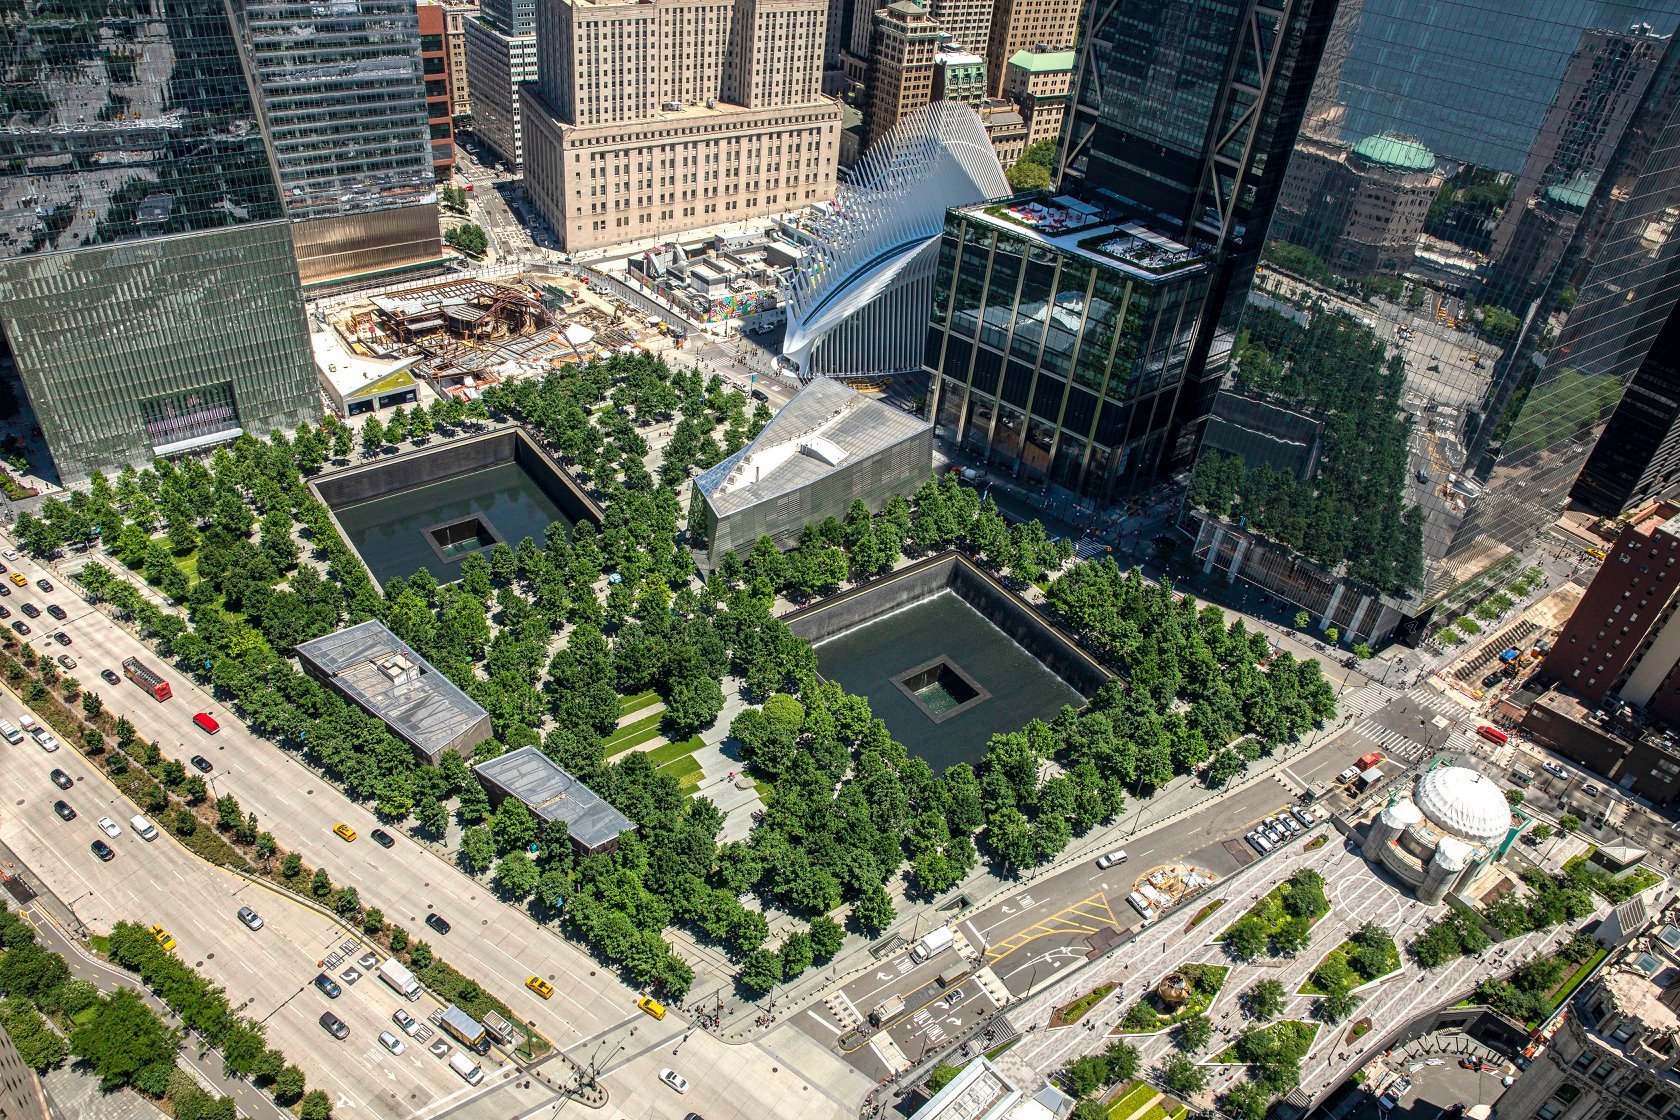 Memorial ao 11 de setembro em Wall Street. (Fonte: Wikimedia Commons)